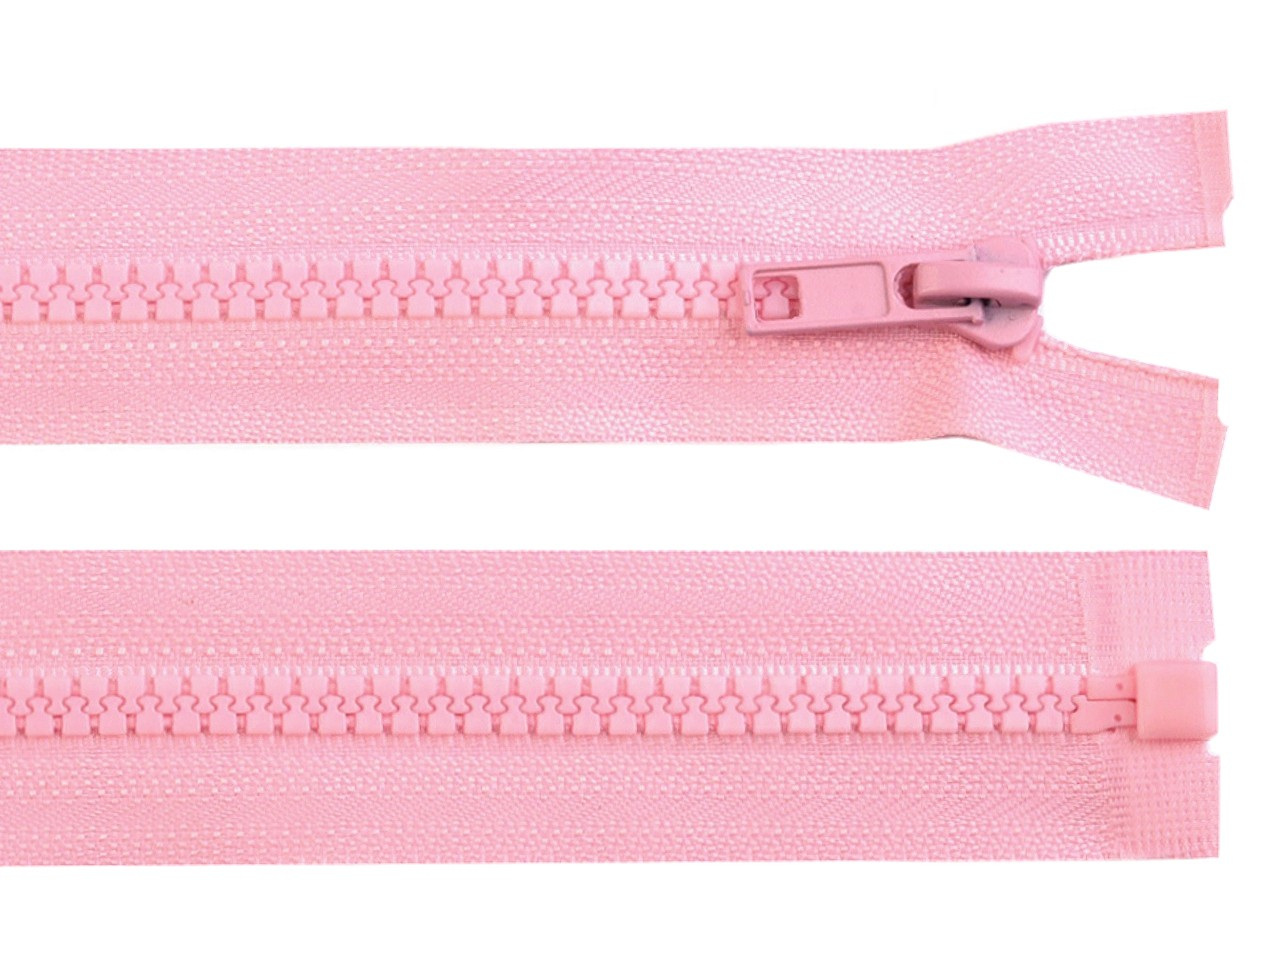 Kostěný zip No 5 délka 55 cm bundový, barva 134 růžová dětská světlá